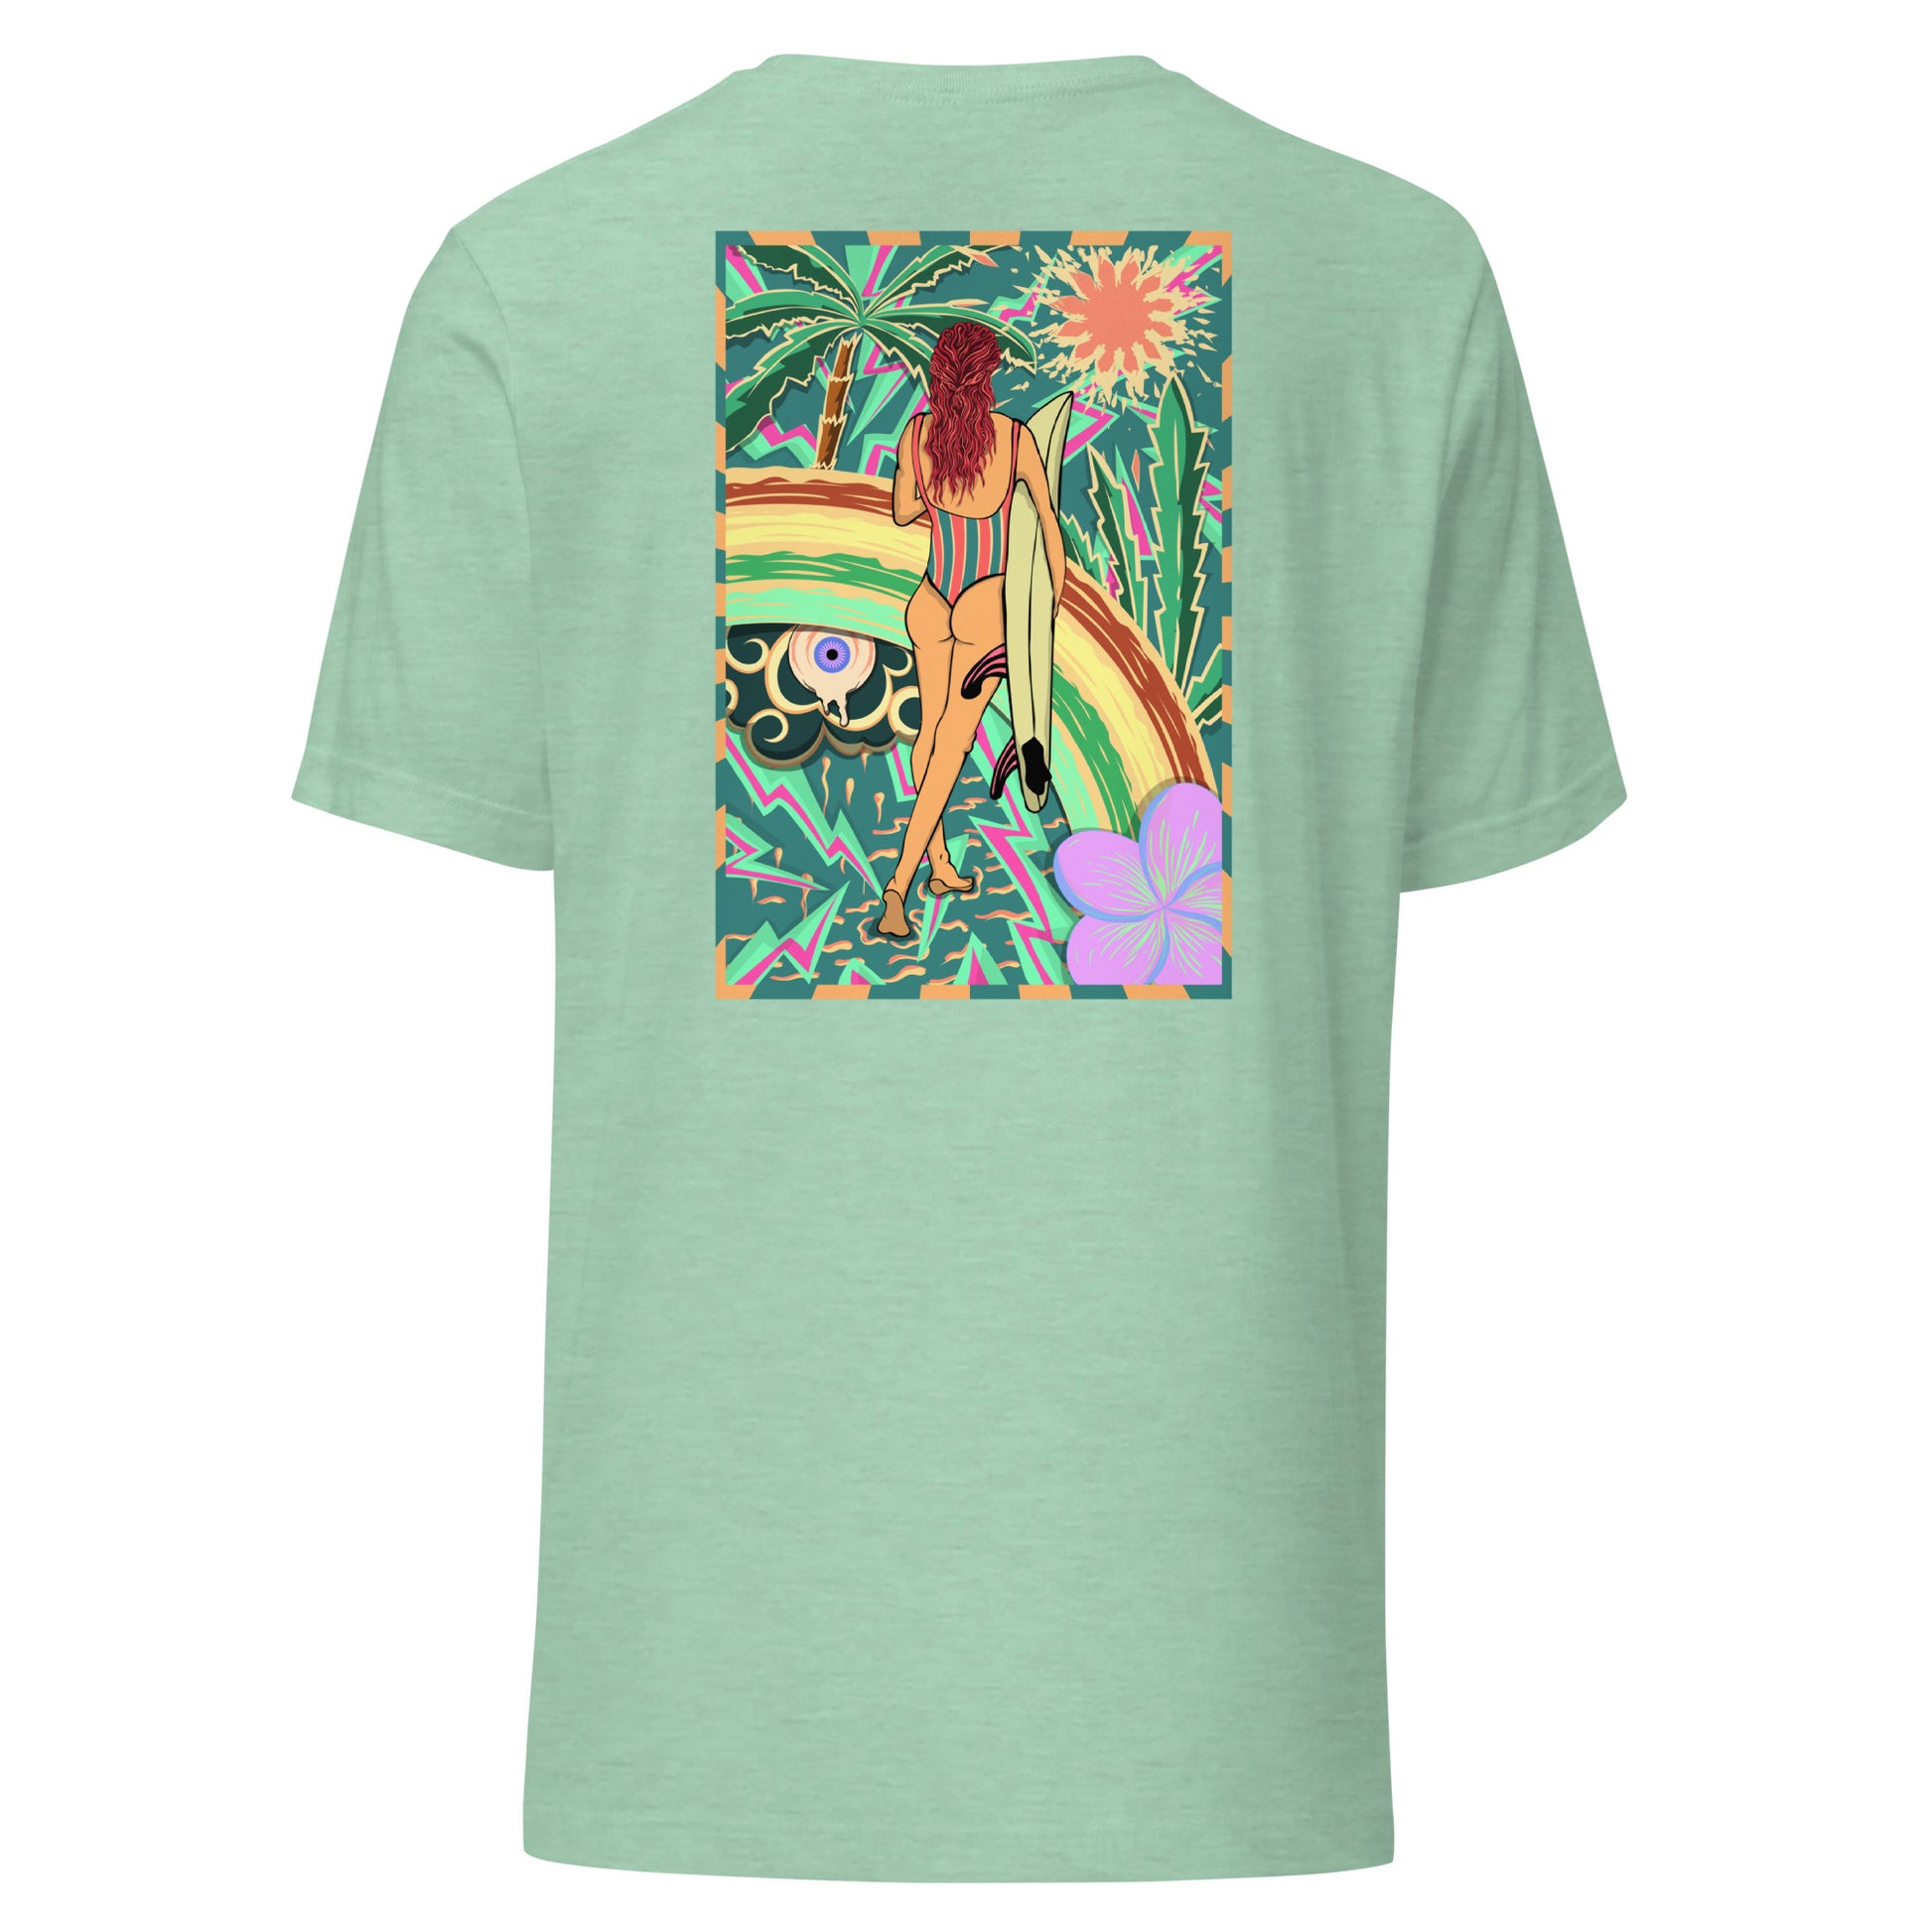 T-shirt surf vintage Walk Of Life surfeuse coloré hippie avec des palmier, fleur, arc en ciel et œil psychédélique. Tshirt dos vert menthe